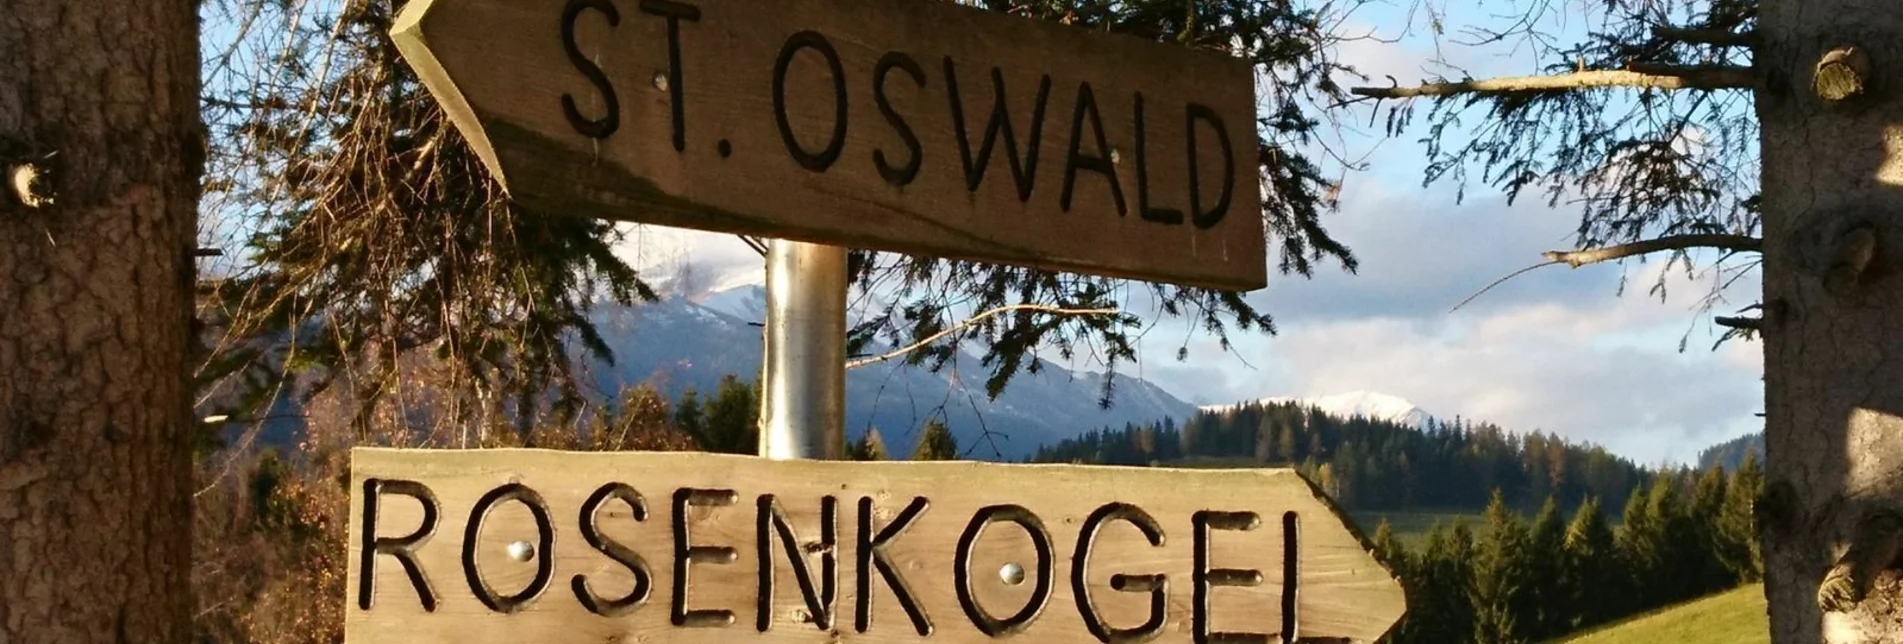 Hiking route Rosenkogel via Sommertörl - Touren-Impression #1 | © Weges